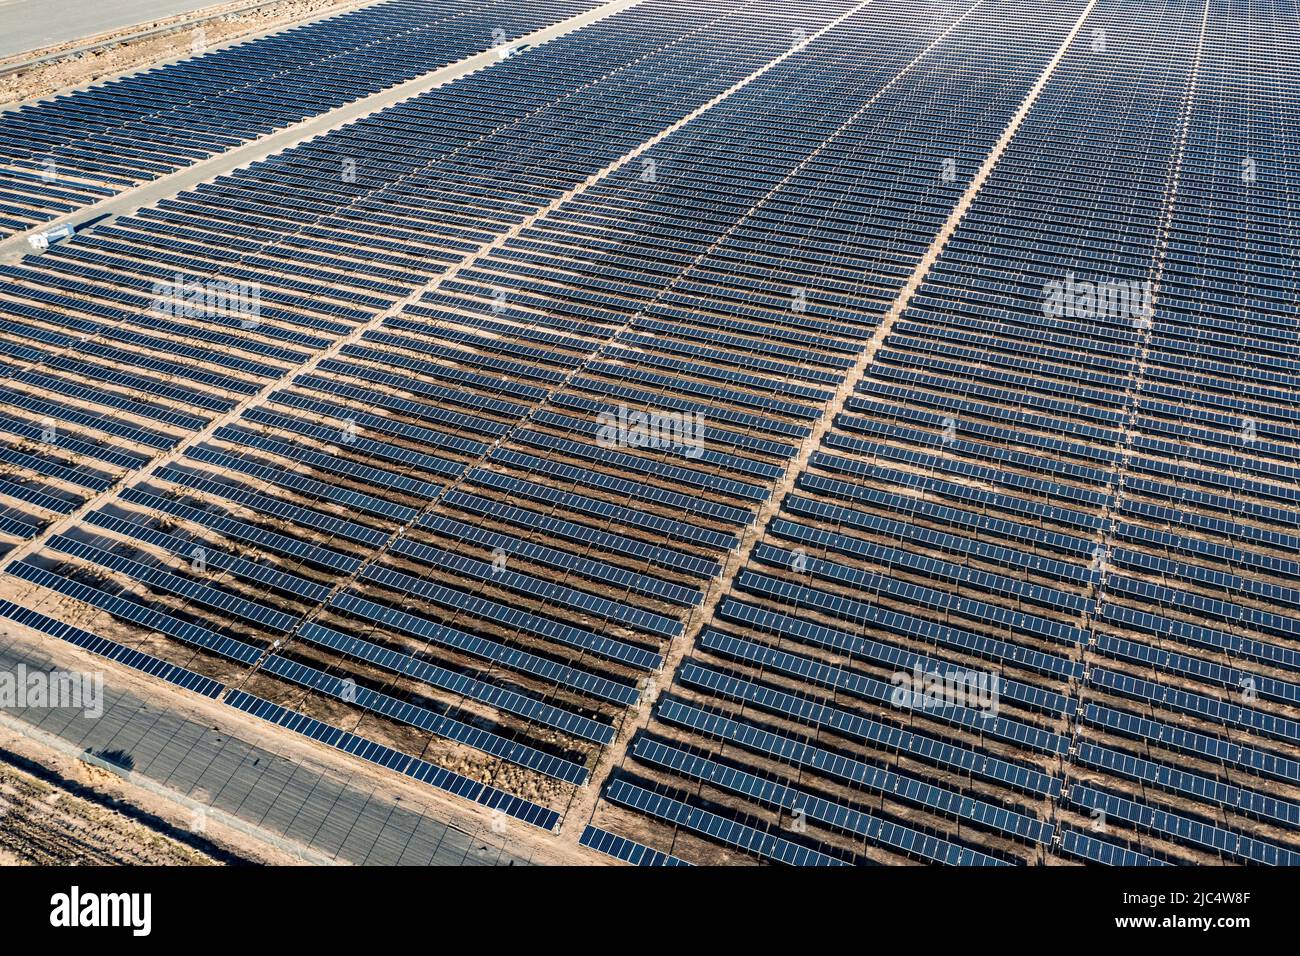 Das Solarprojekt Escalante ist eine 240 MW Photovoltaik-Anlage in der Nähe von Milford, Utah. Stockfoto